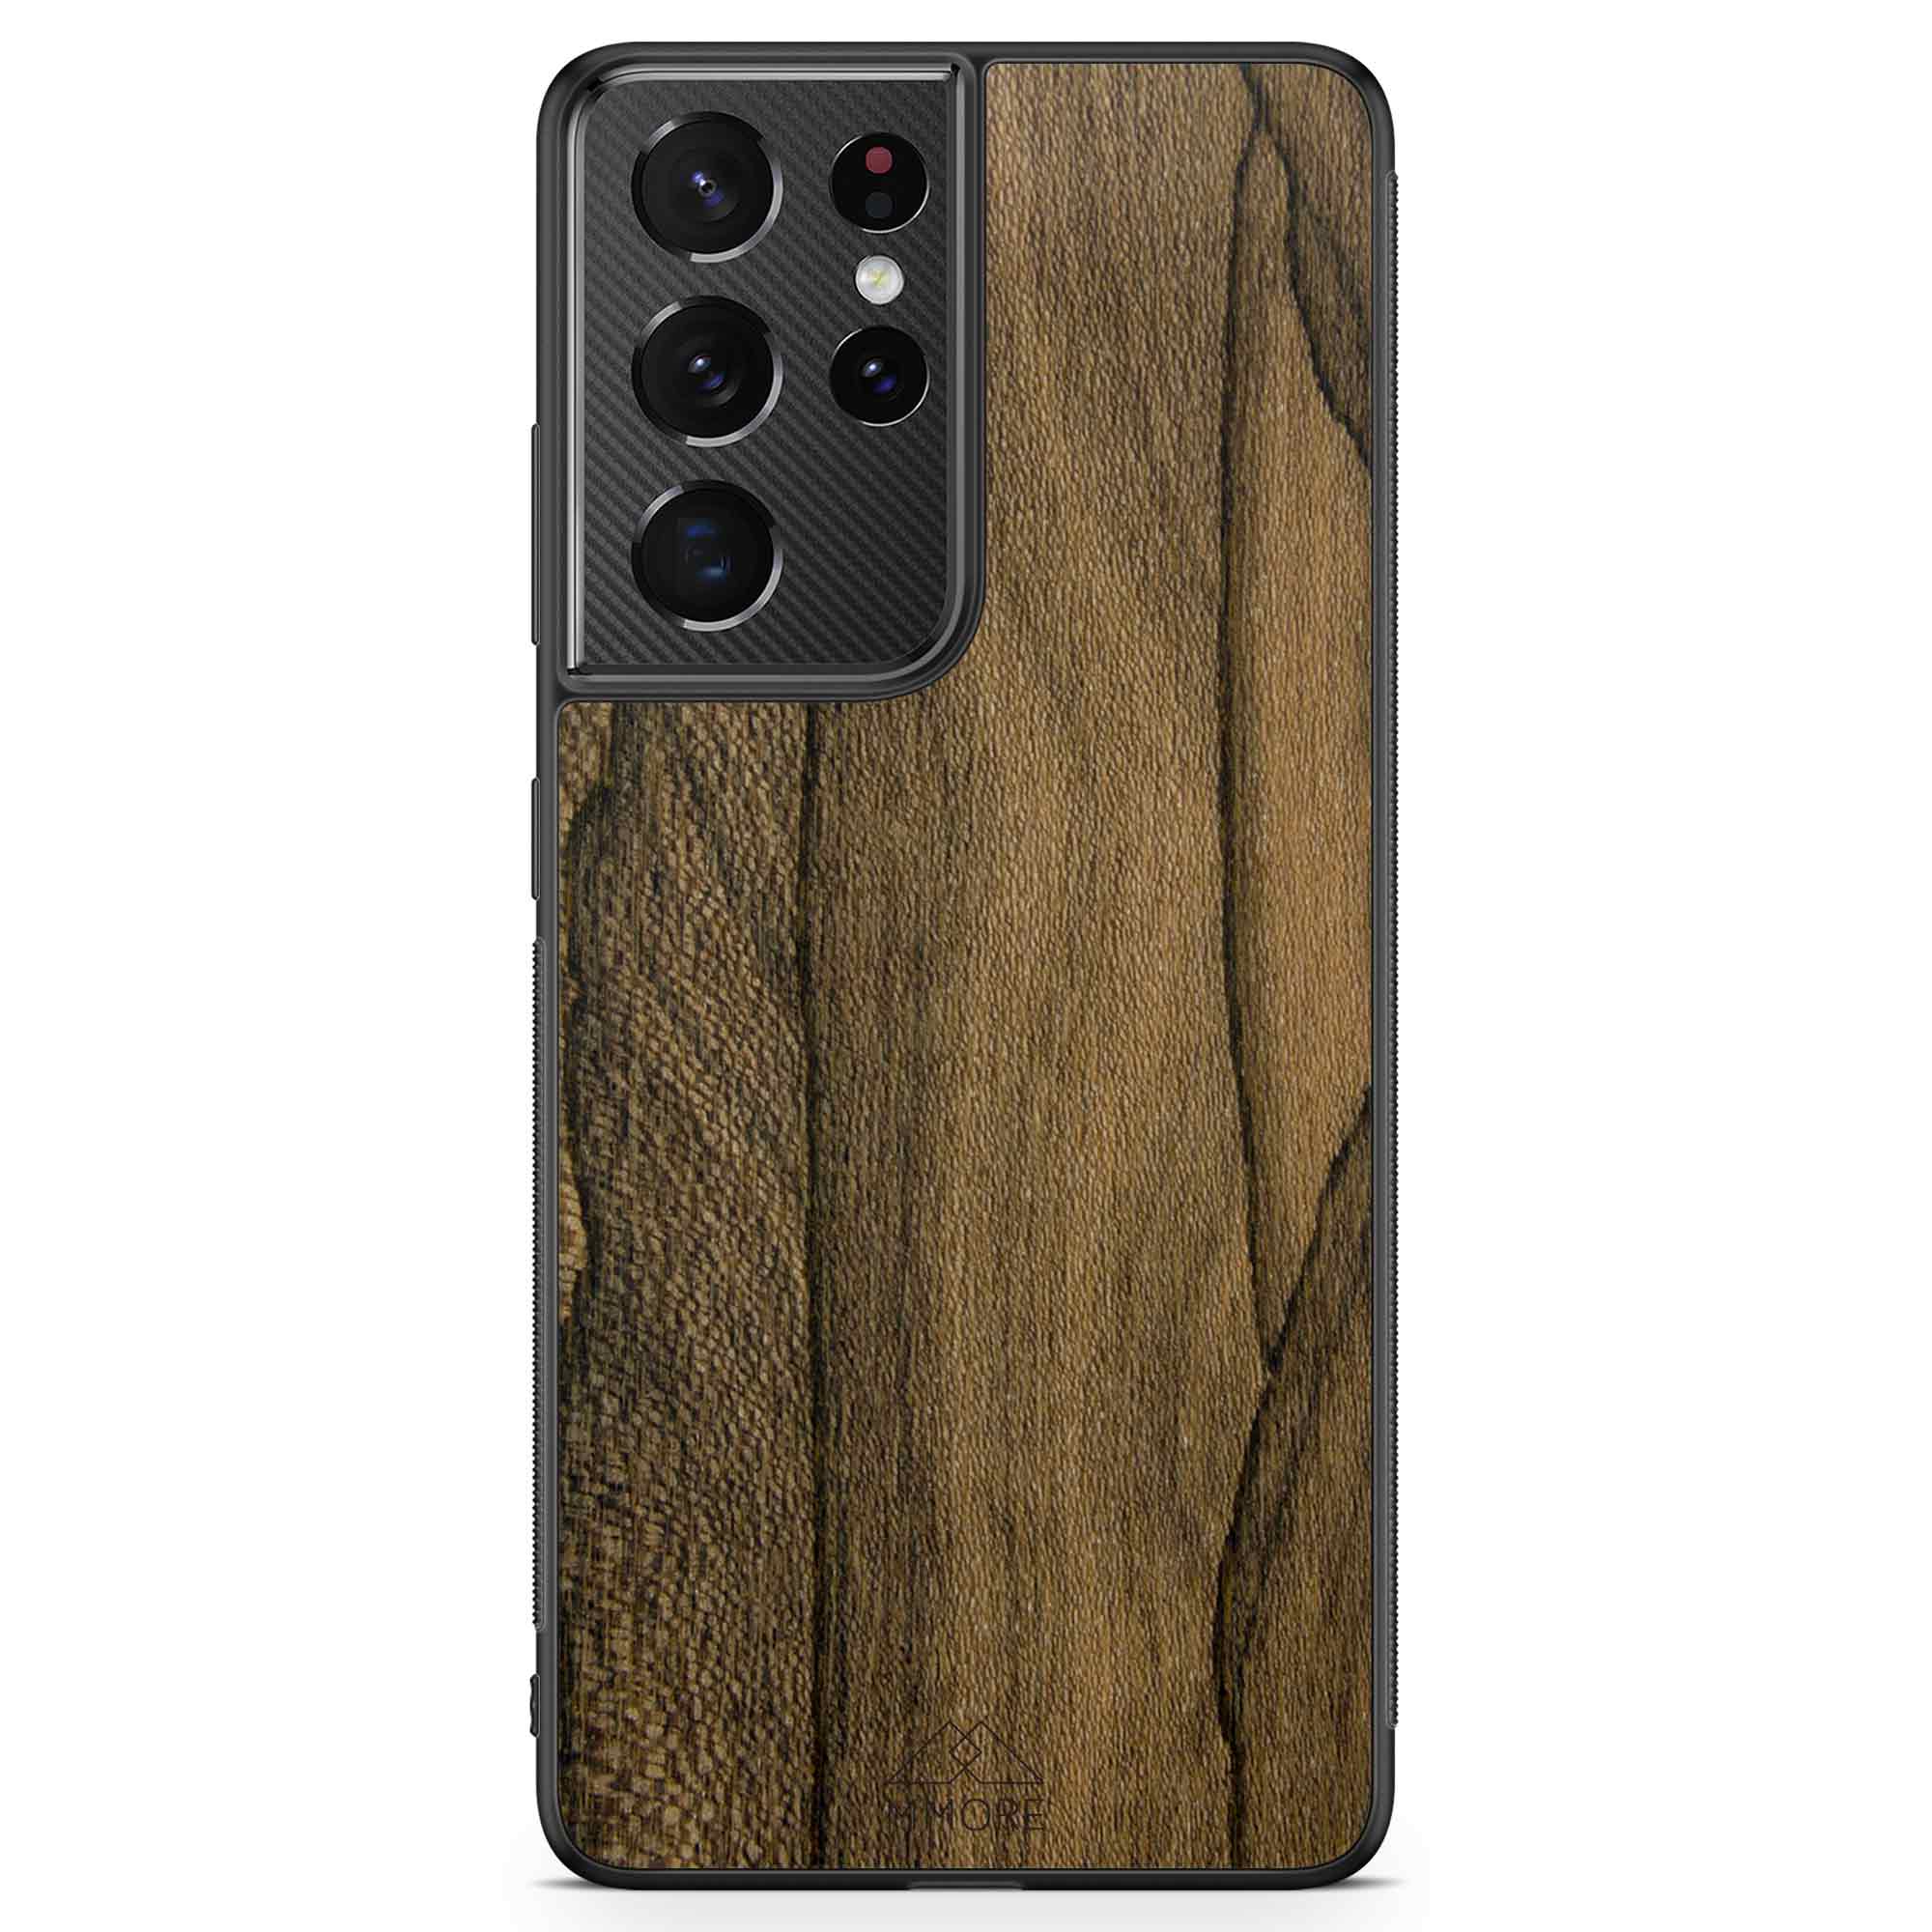 Custodia per cellulare Samsung S21 Ultra in legno Ziricote